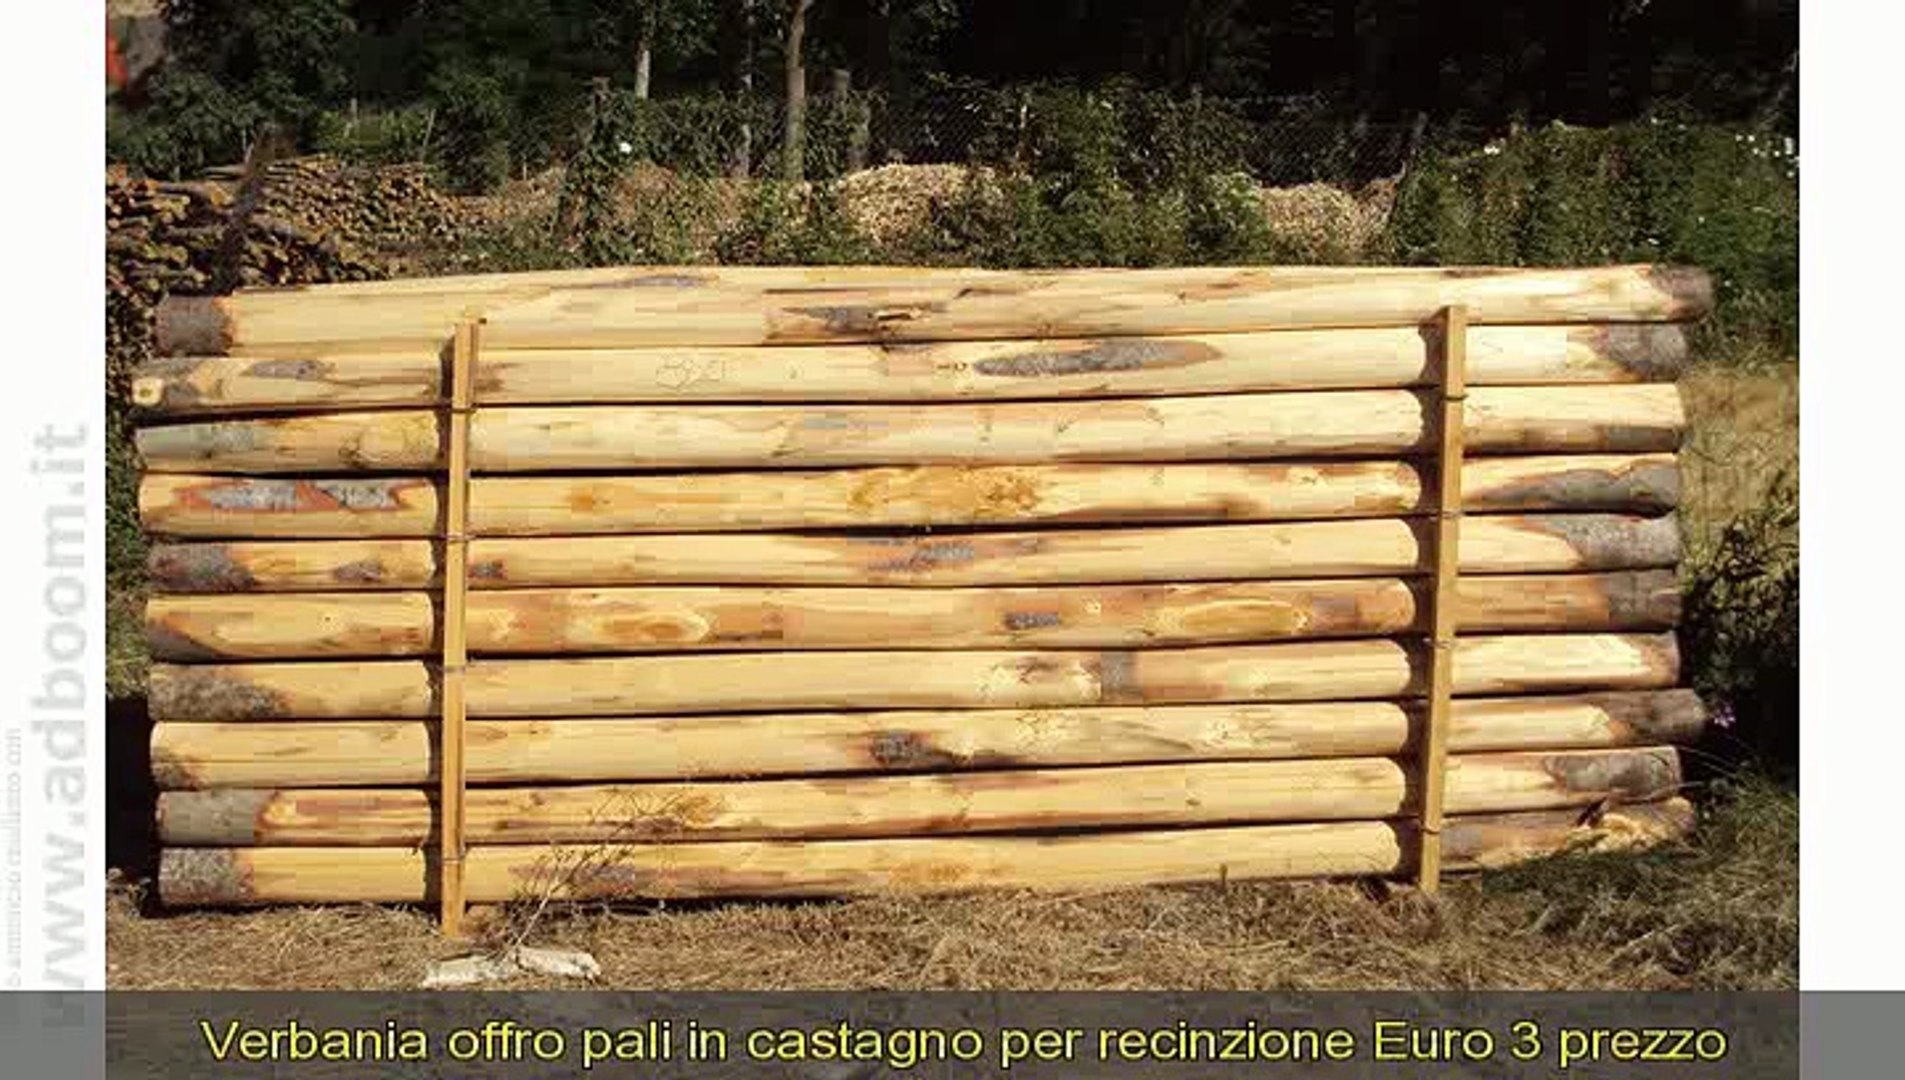 VERBANIA, PALI IN CASTAGNO PER RECINZIONE EURO 3 - Video Dailymotion